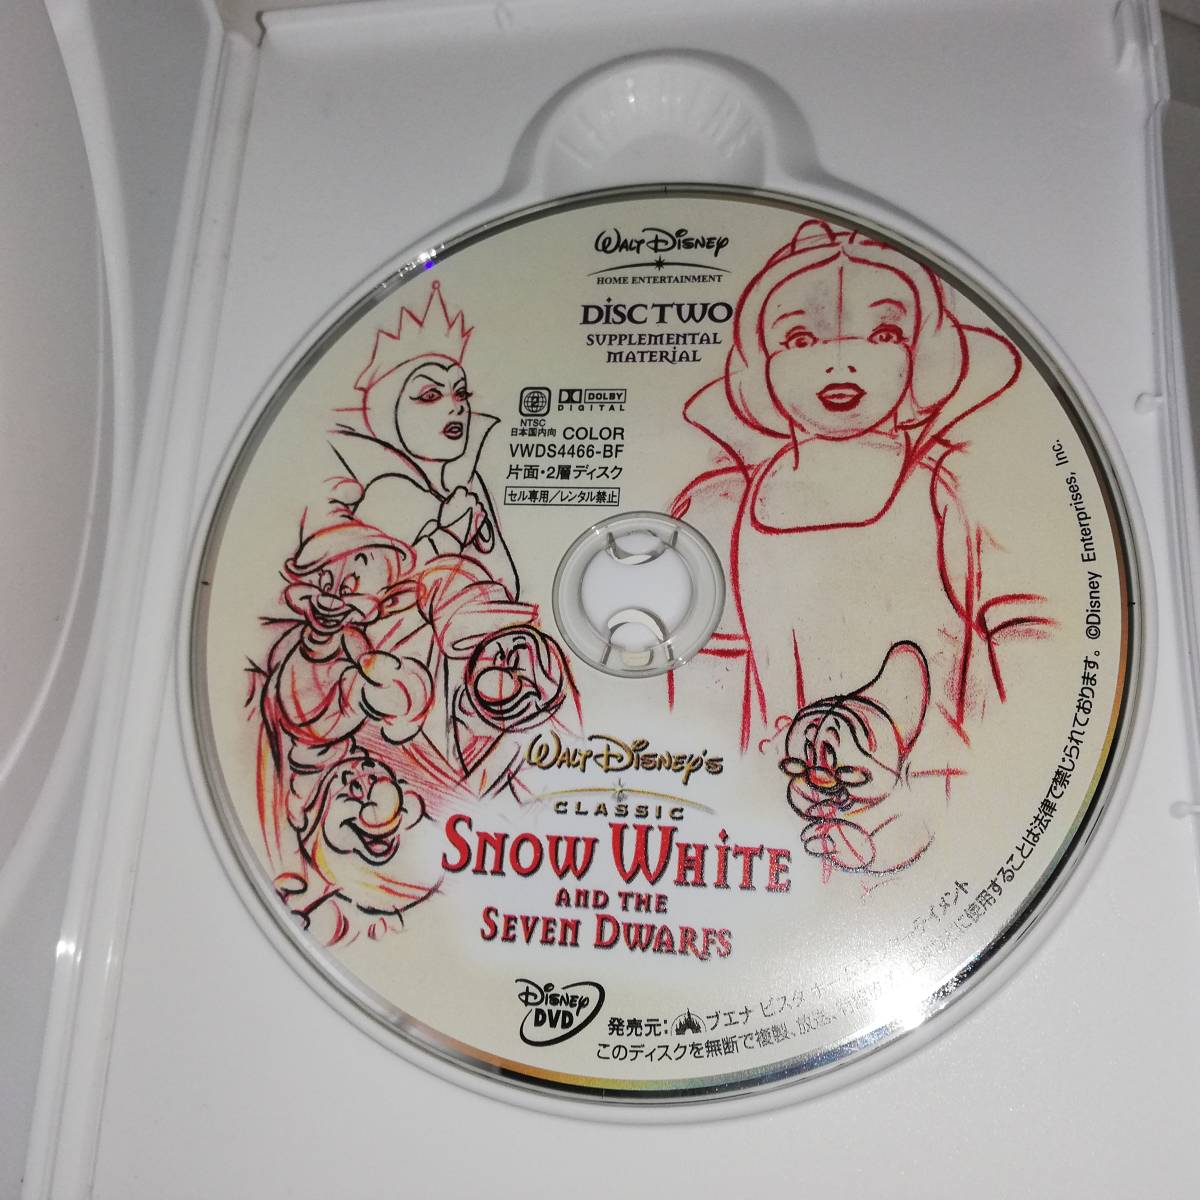 ◎白雪姫 SNOW WHITE AND THE SEVEN DWARFS　DELUXE TWO Disc SET ◎セル版 DVD2枚組◎デラックス版◎ディズニー クラシック◎送料無料